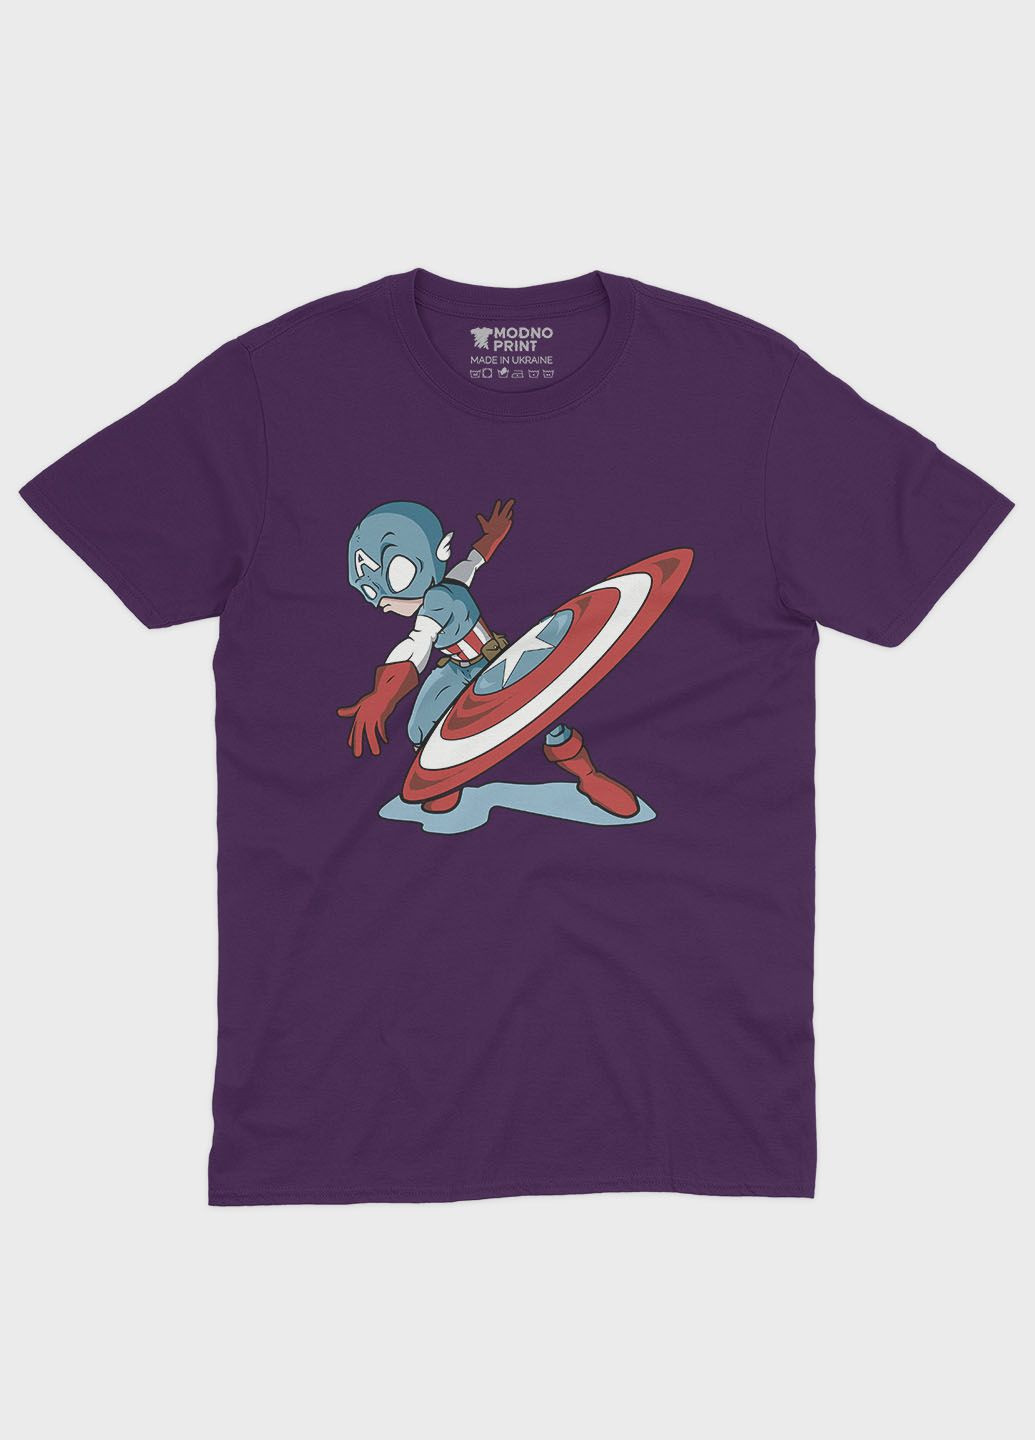 Фиолетовая демисезонная футболка для мальчика с принтом супергероя - капитан америка (ts001-1-dby-006-022-011-b) Modno